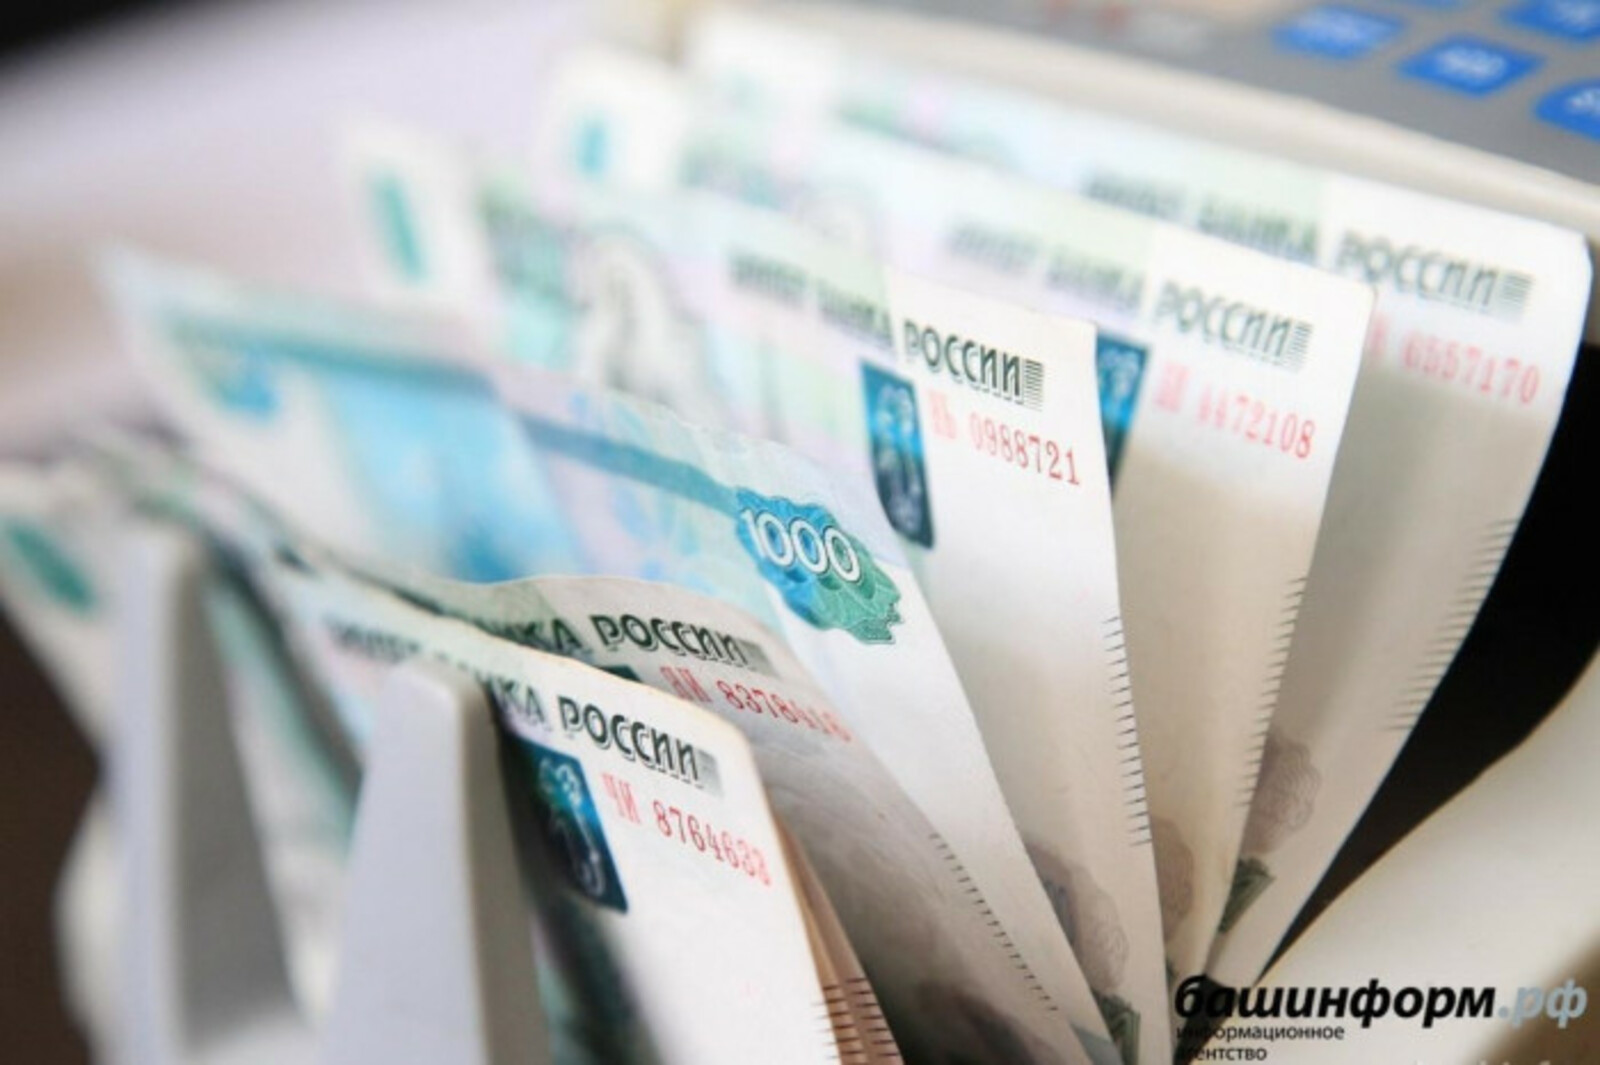 Правительство РФ добавит 5 млрд рублей на льготные кредиты АПК